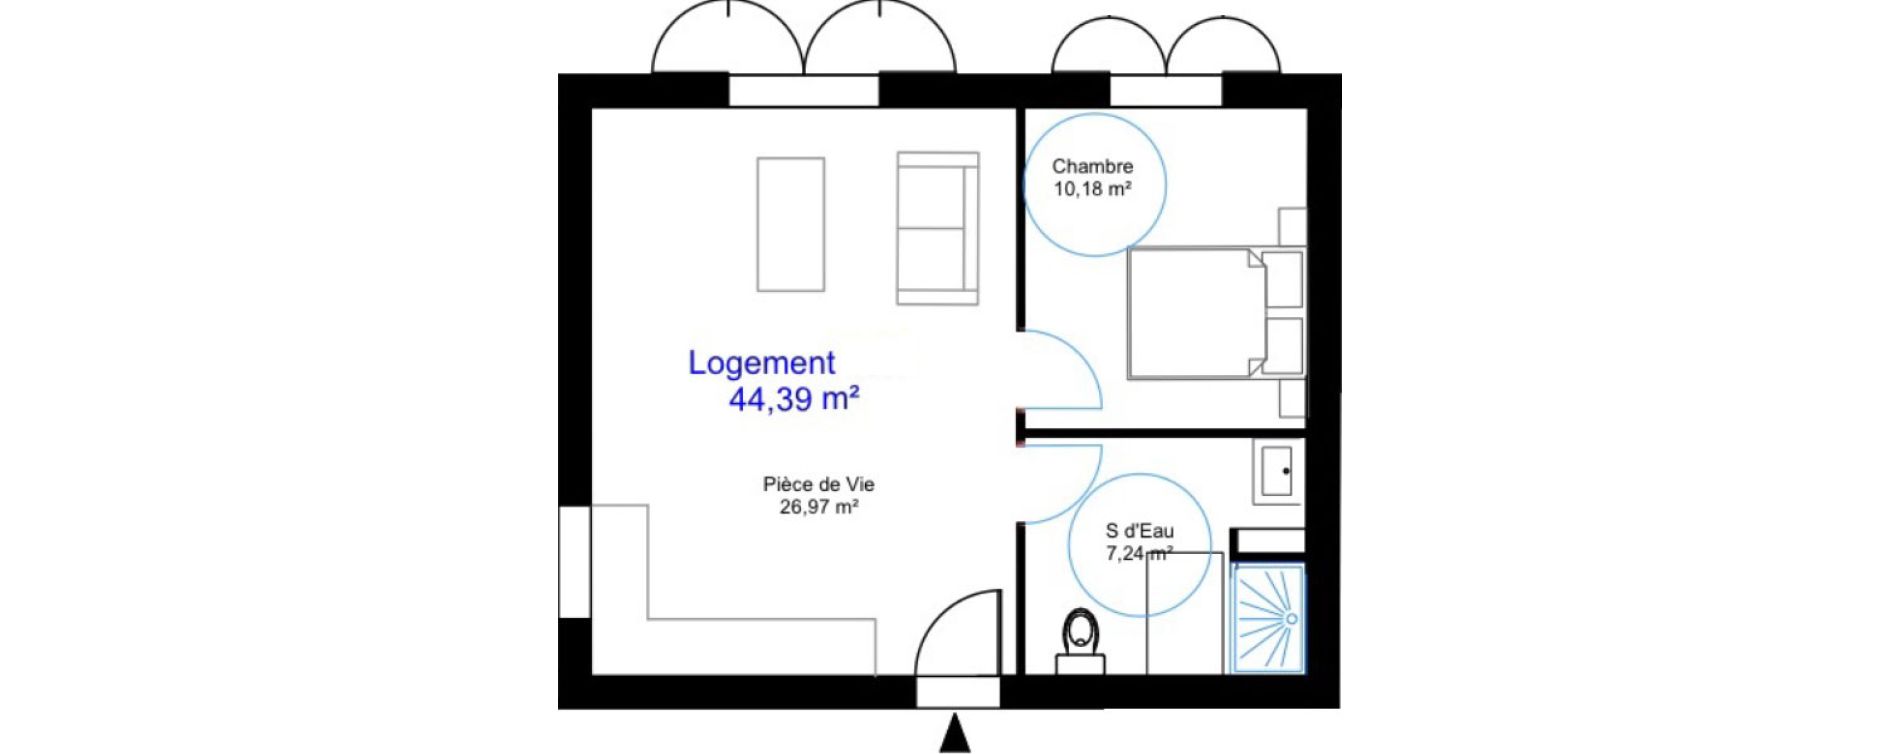 Appartement T2 de 44,39 m2 aux Sables-D'Olonne Le chateau d olonne